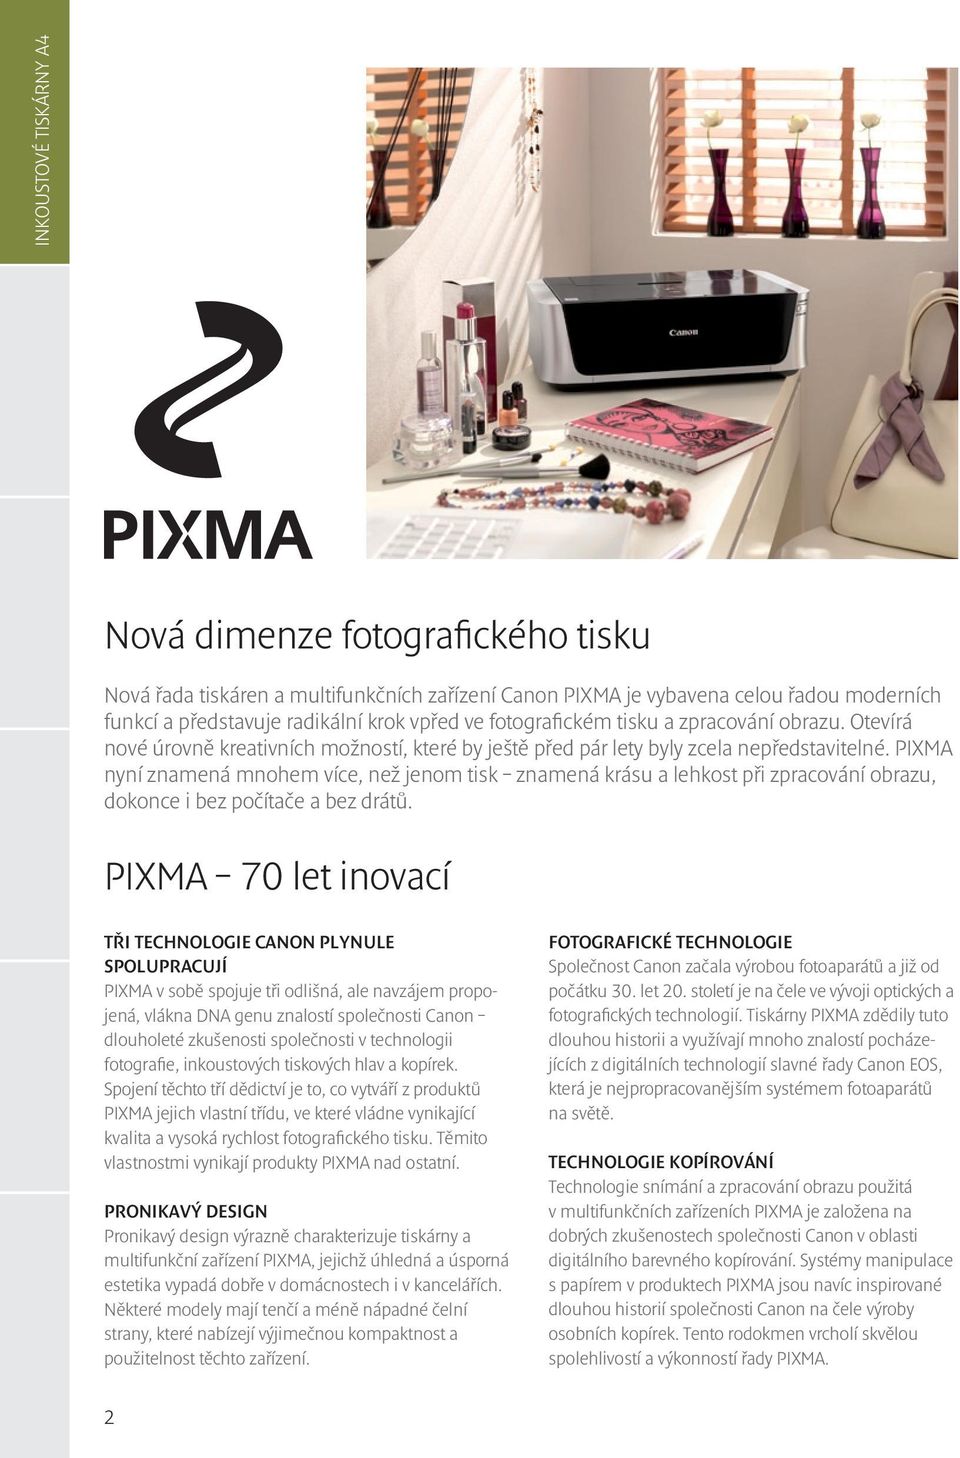 PIXMA nyní znamená mnohem více, než jenom tisk znamená krásu a lehkost při zpracování obrazu, dokonce i bez počítače a bez drátů.